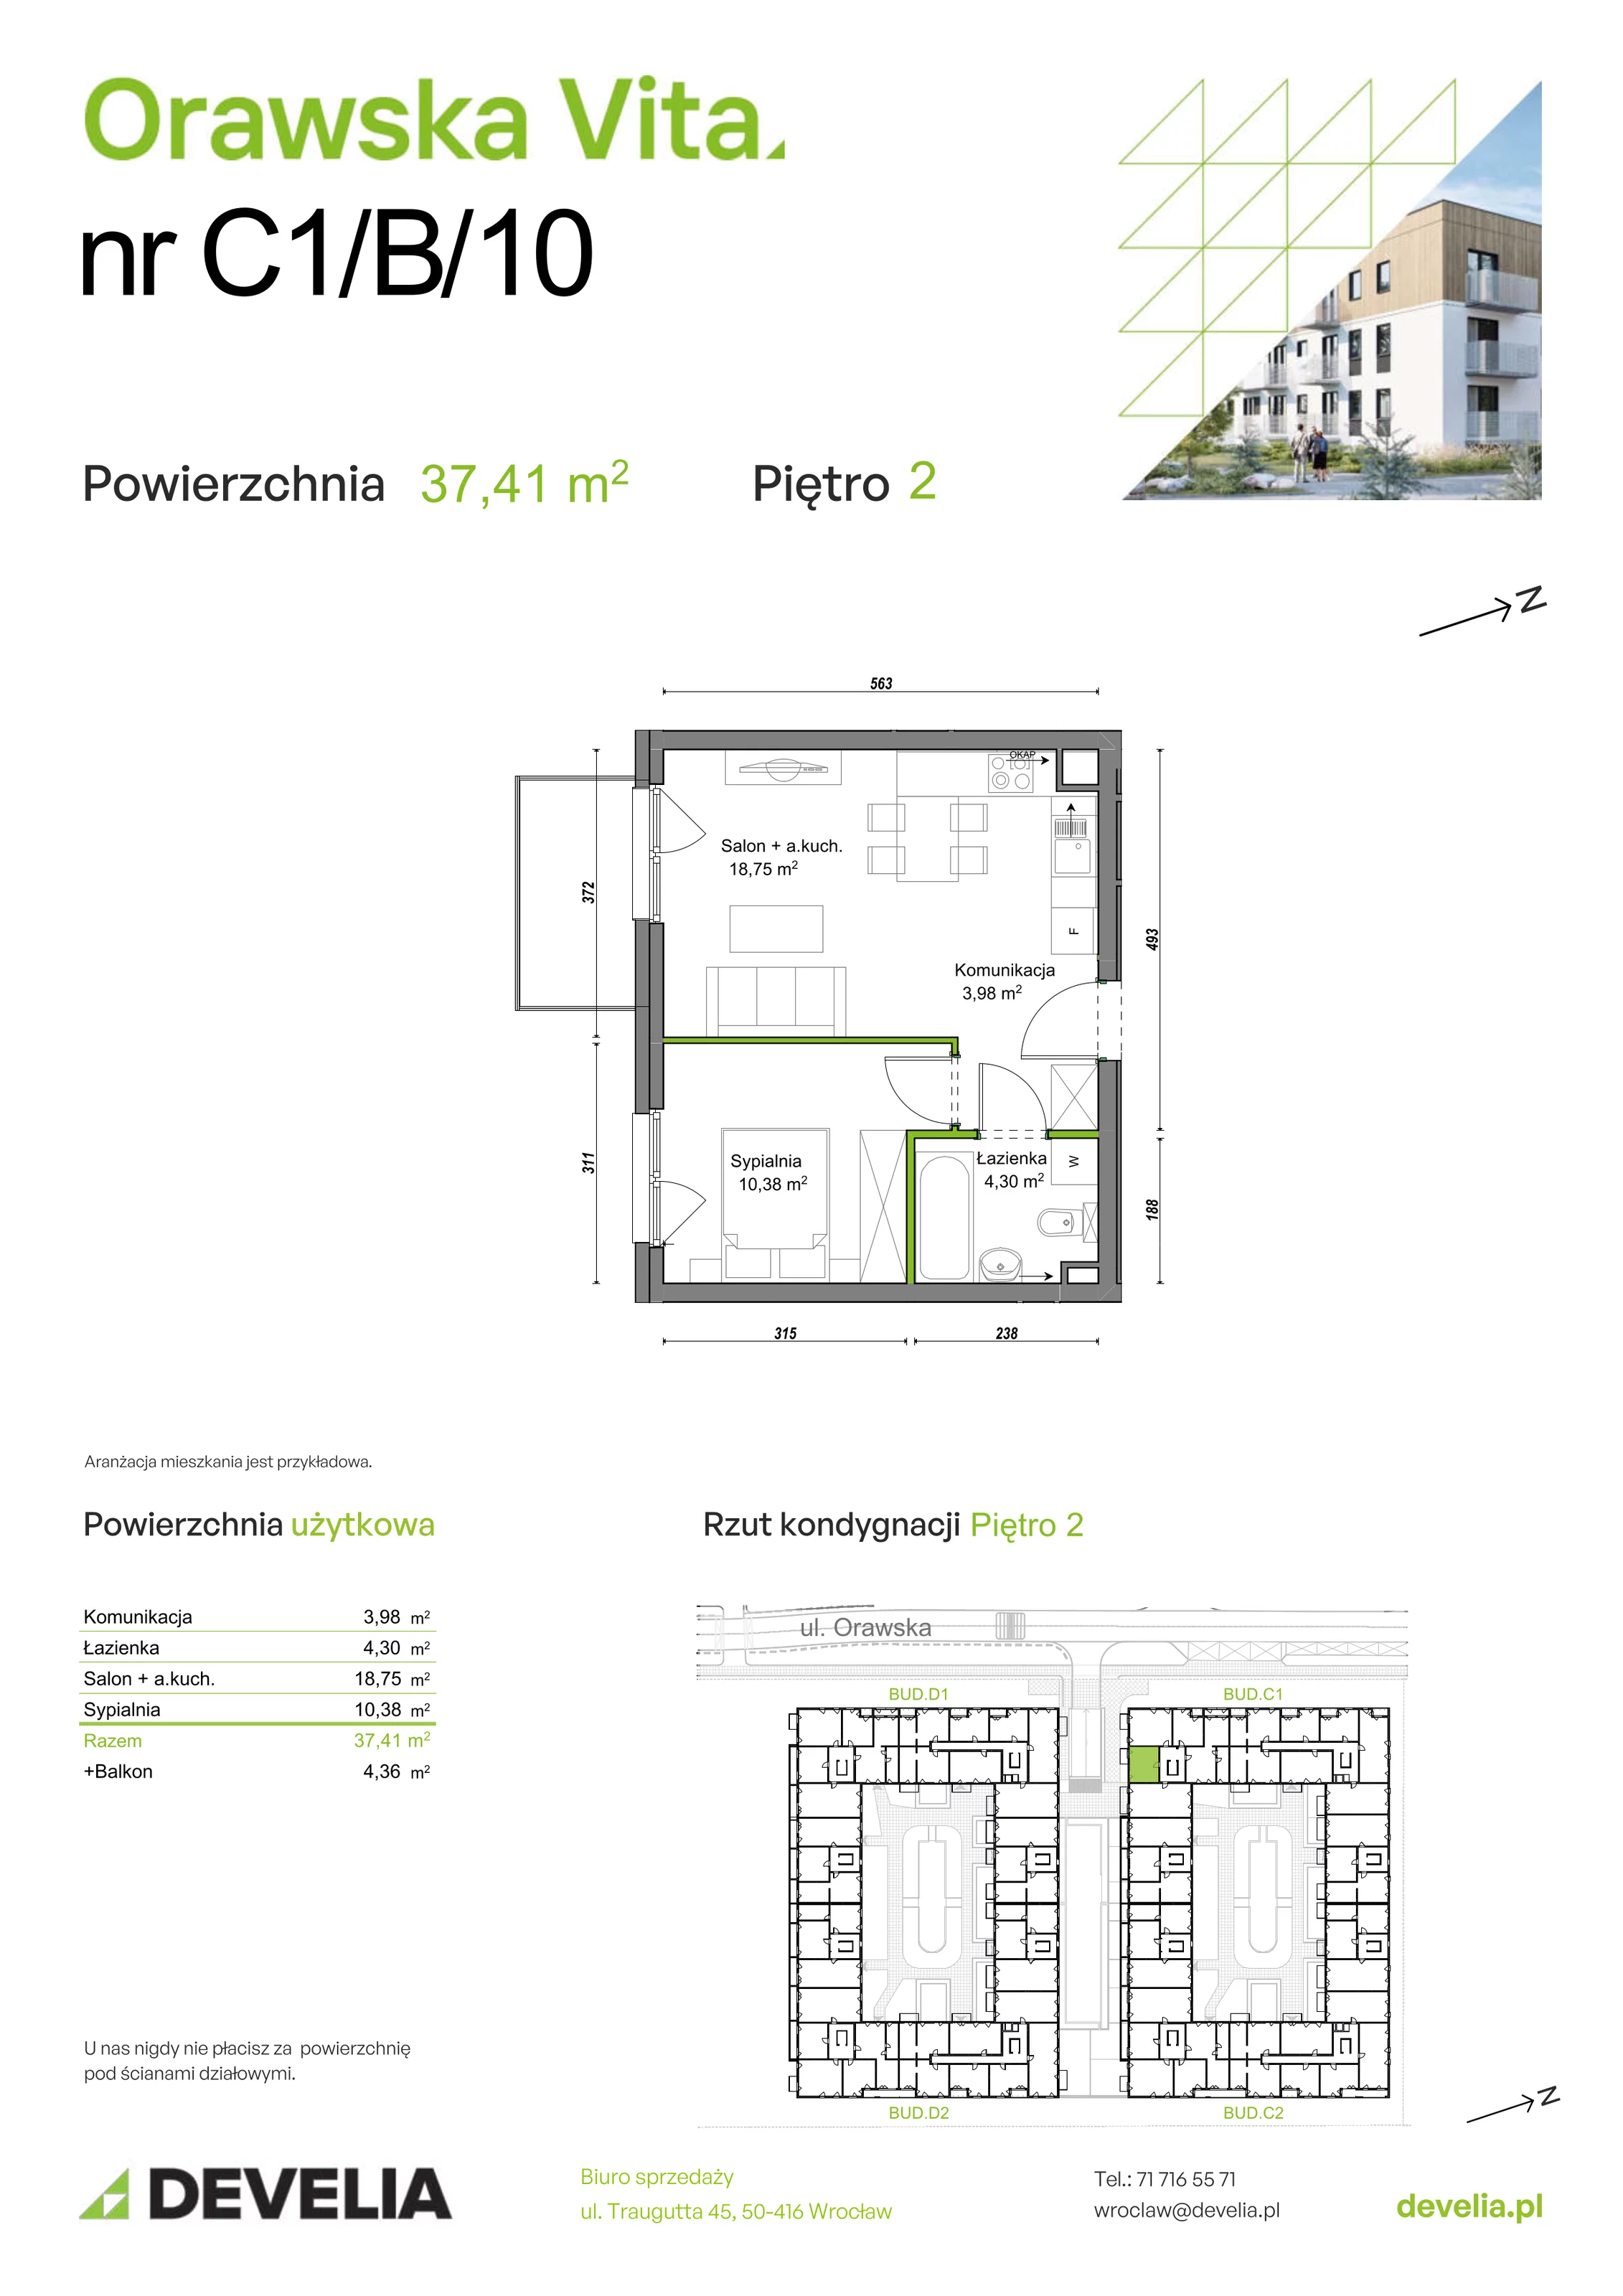 Mieszkanie 37,41 m², piętro 2, oferta nr C1/B/10, Orawska Vita, Wrocław, Ołtaszyn, Krzyki, ul. Orawska 73